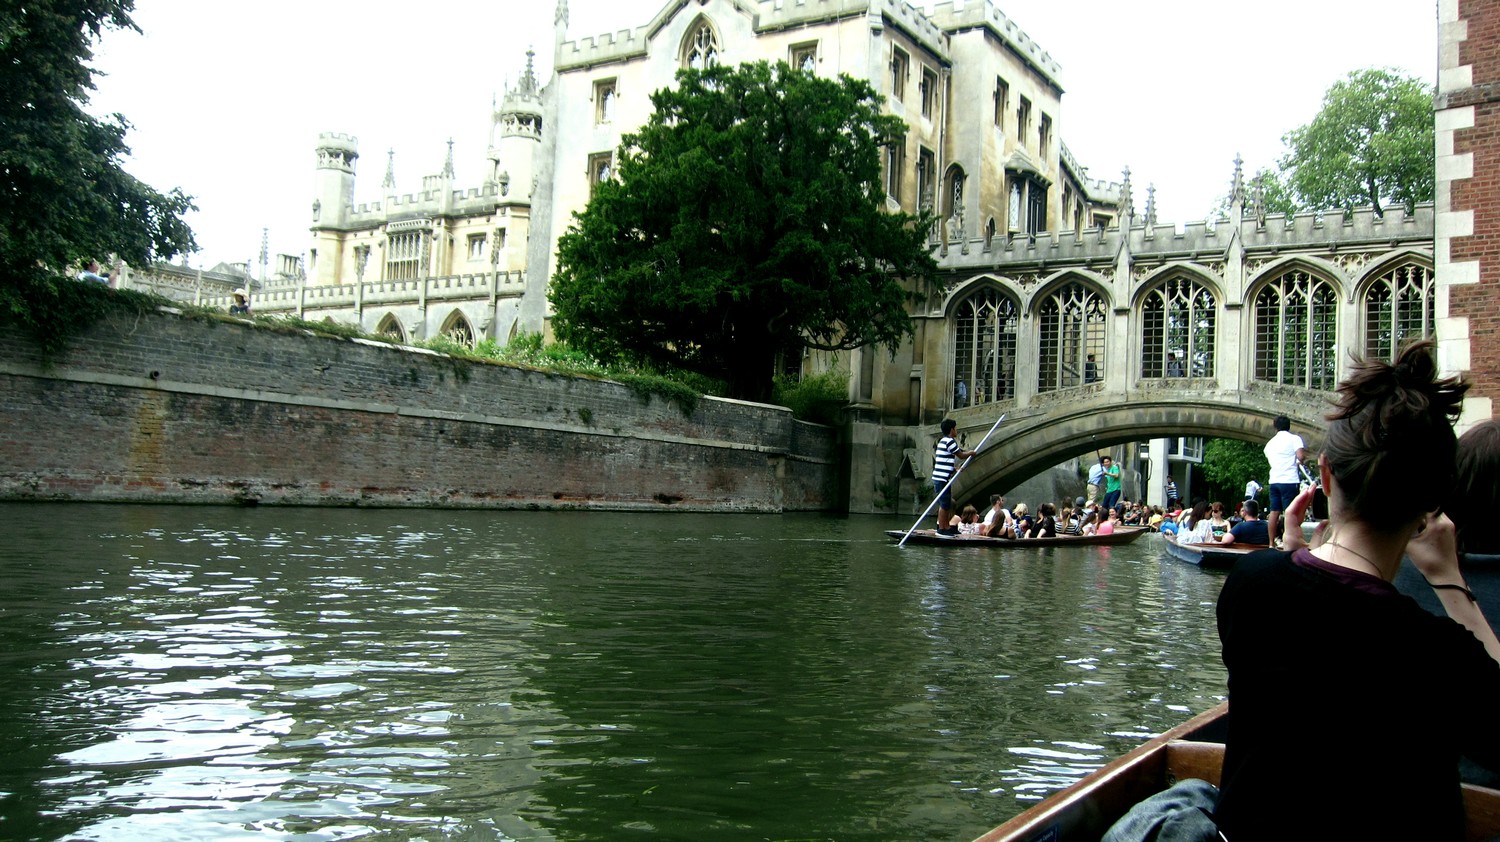 Cambridge 3